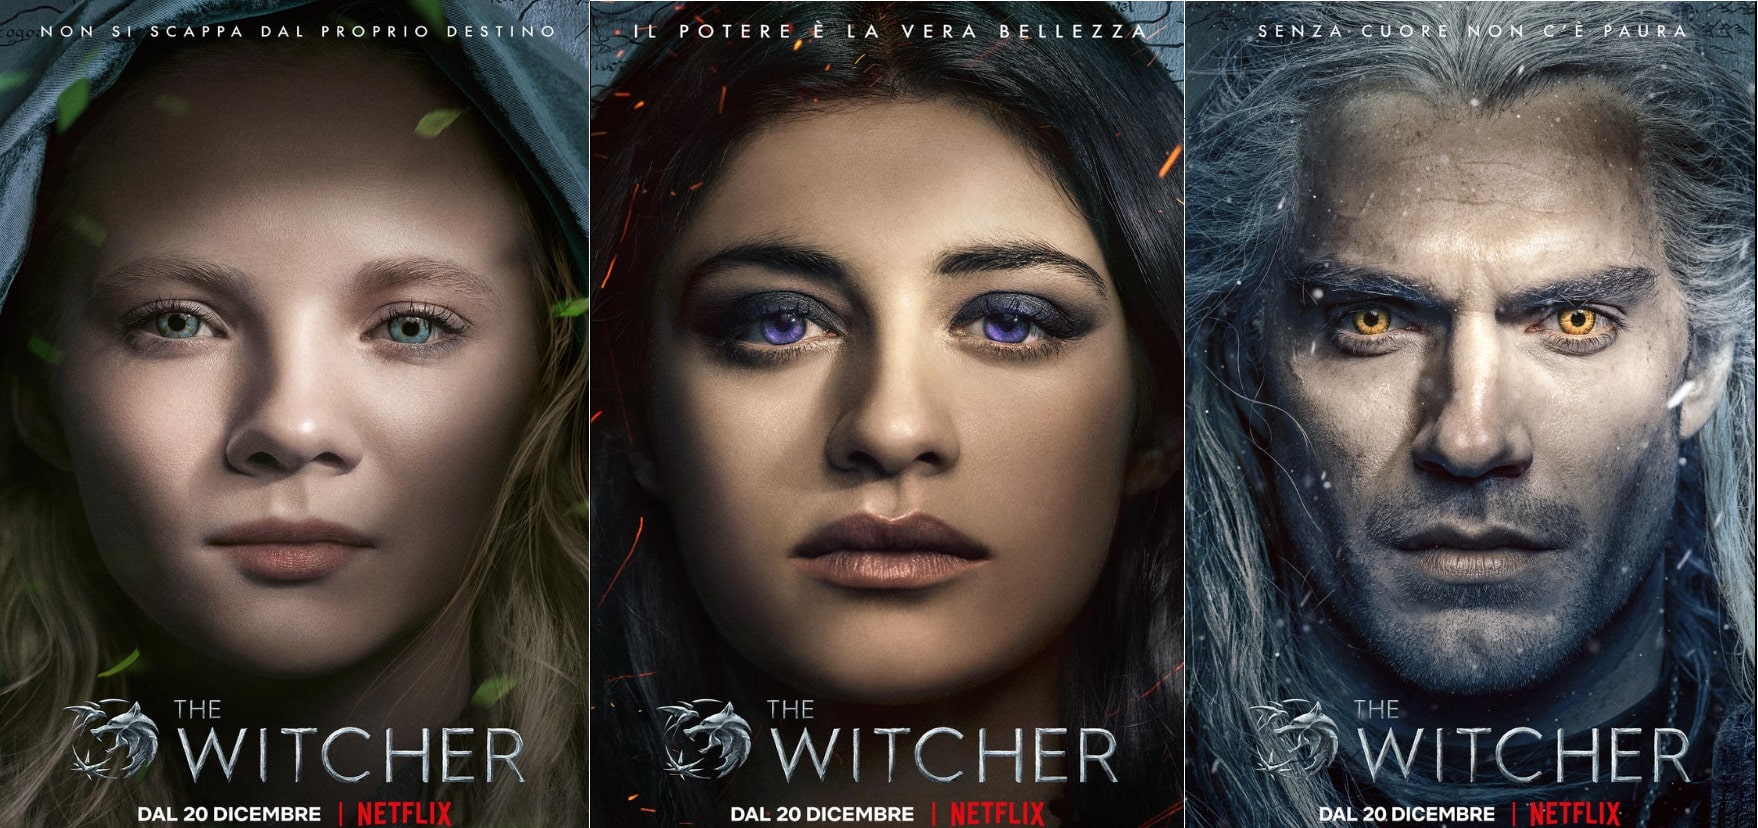 The Witcher: ecco le featurettes dei 3 protagonisti! 8